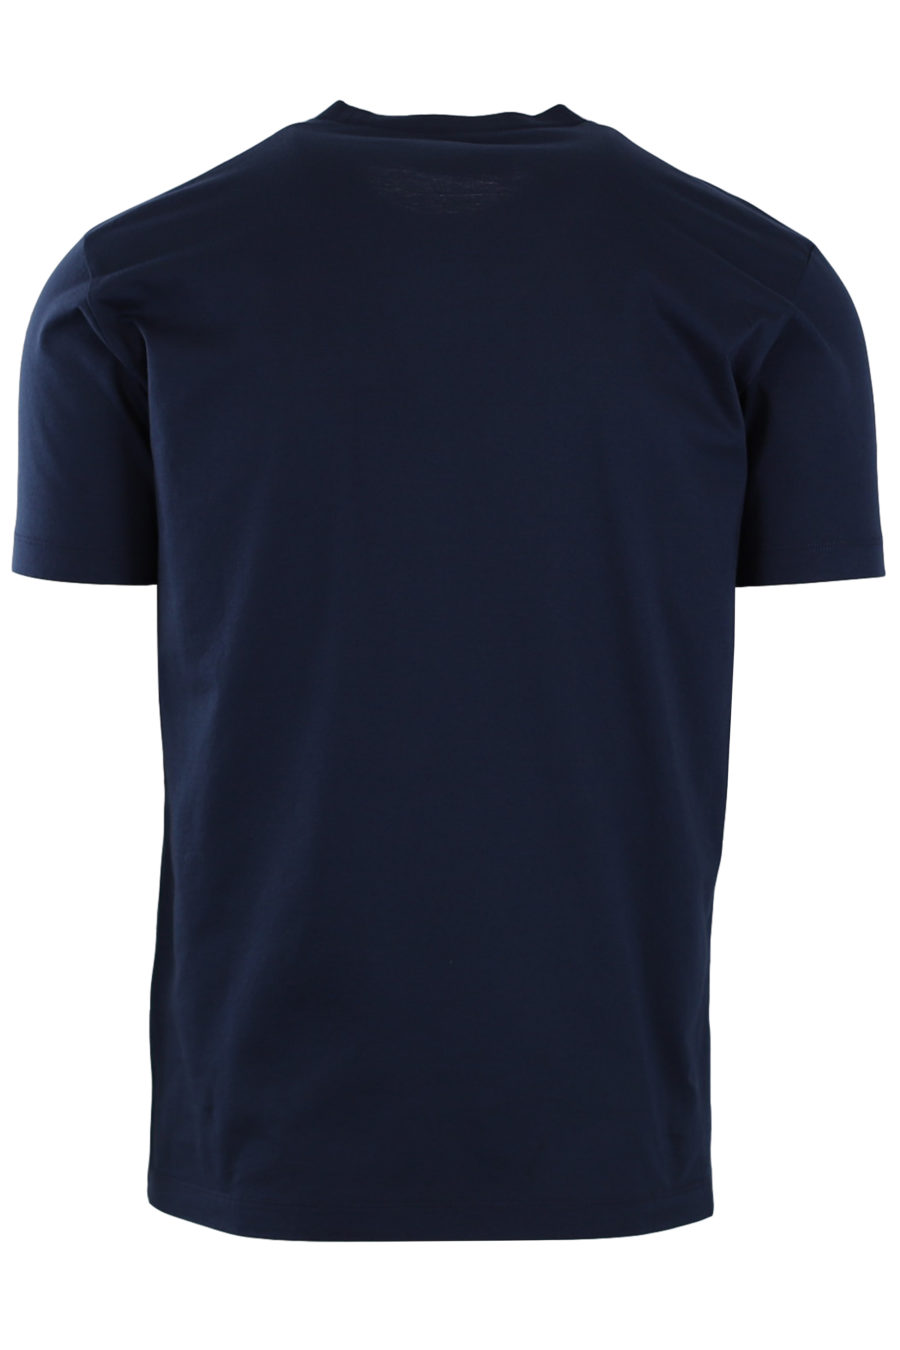 Camiseta azul con estampado blanco "Ceresio 9 Milano" - 4103fa219855faf74e99345916a6867bad603aba